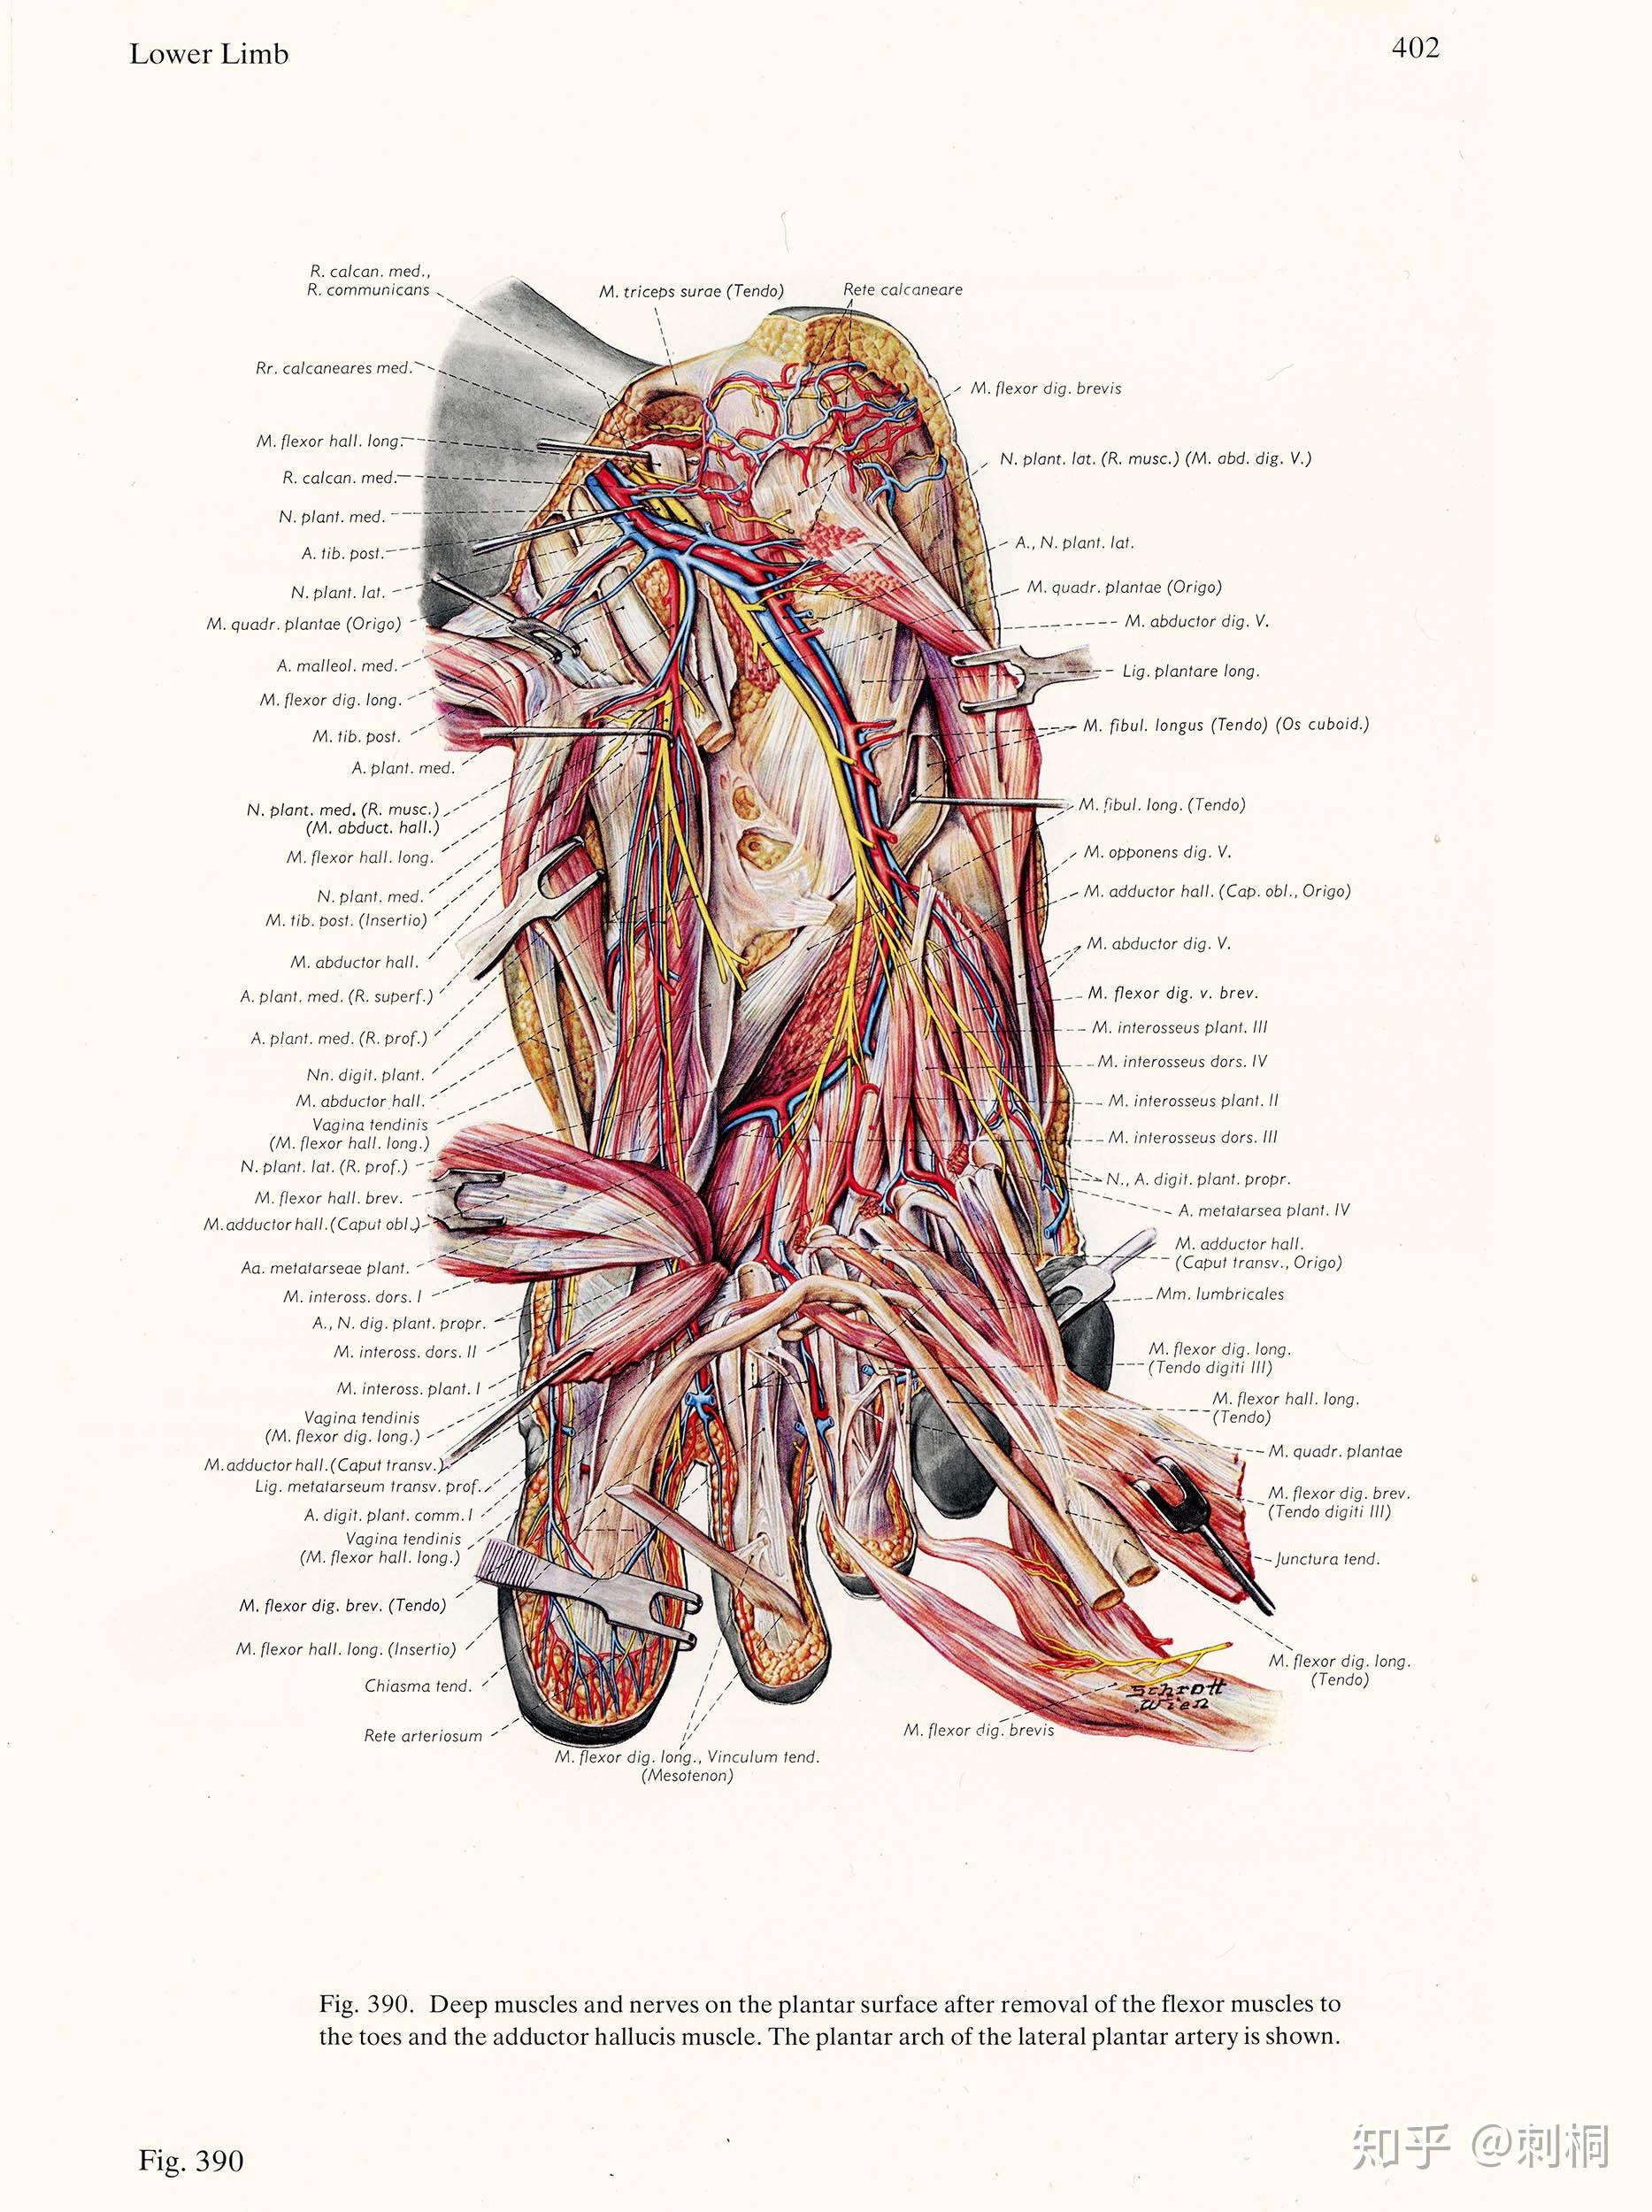 欧美经典人体解剖图谱概览